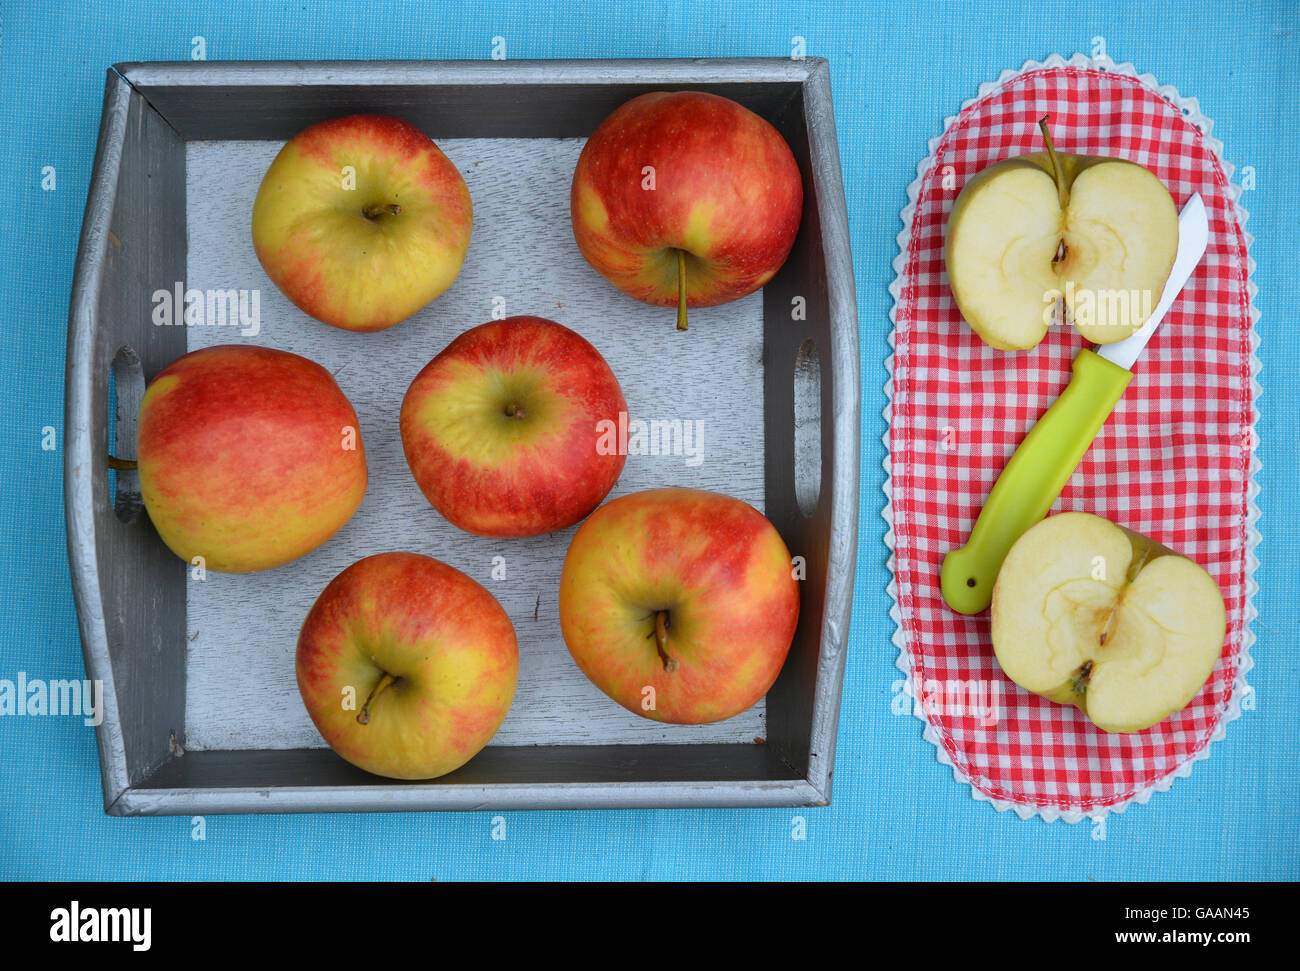 Brillantes cortadas frescas manzanas en una canasta de madera con un cuchillo y una tela a cuadros rojo y blanco Foto de stock